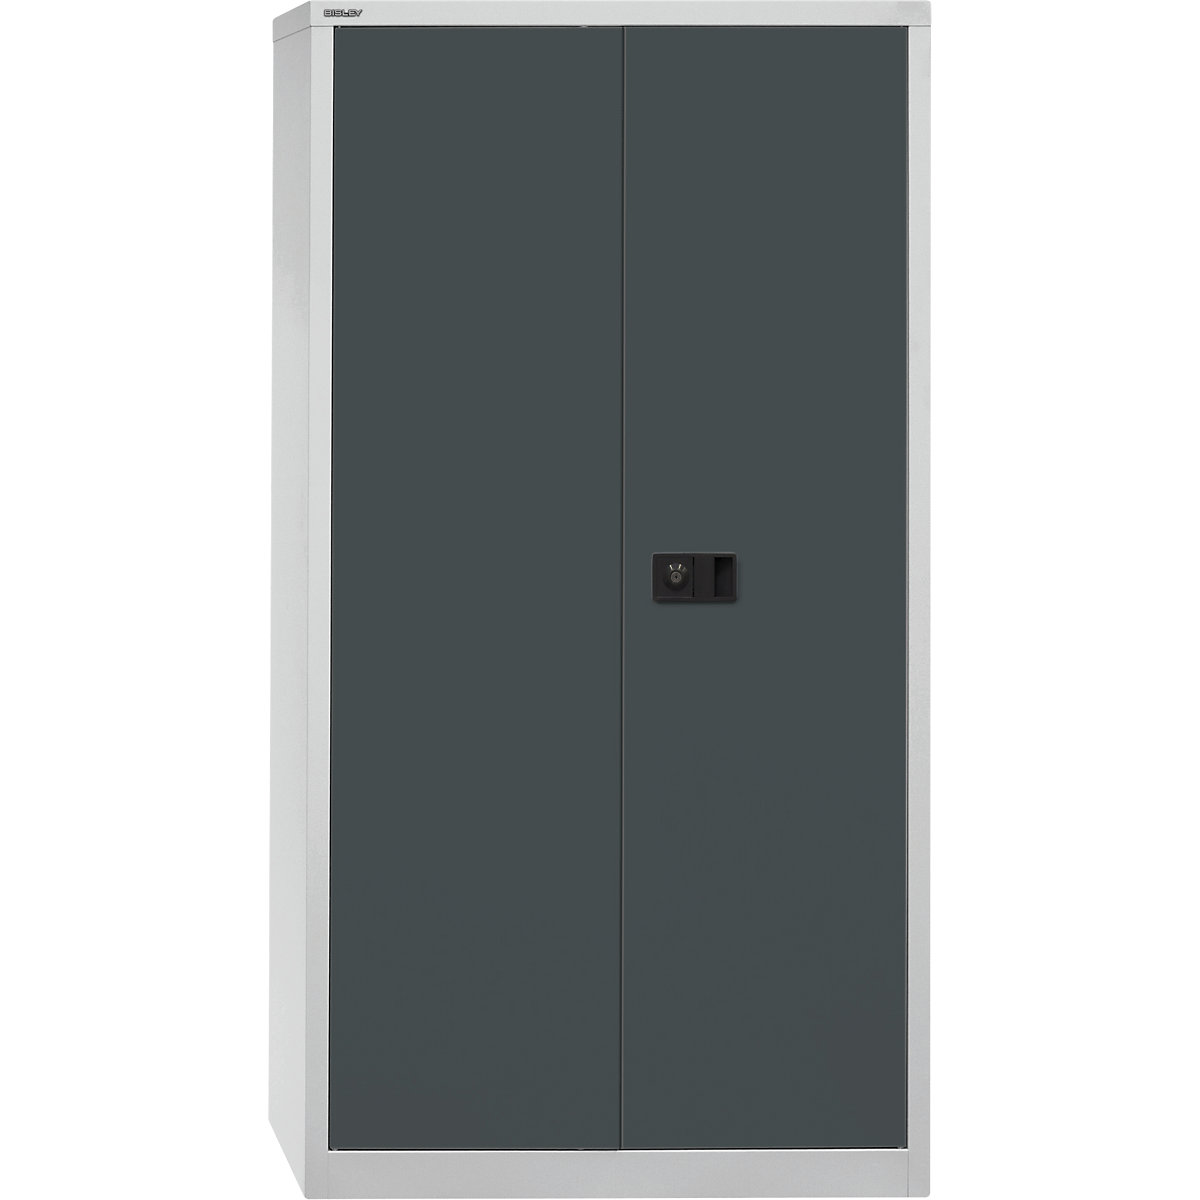 Skříň s otočnými dveřmi UNIVERSAL – BISLEY, v x š x h 1806 x 914 x 400 mm, 3 pozinkované police, 4 výšky pořadačů, světlá šedá / antracitová-7